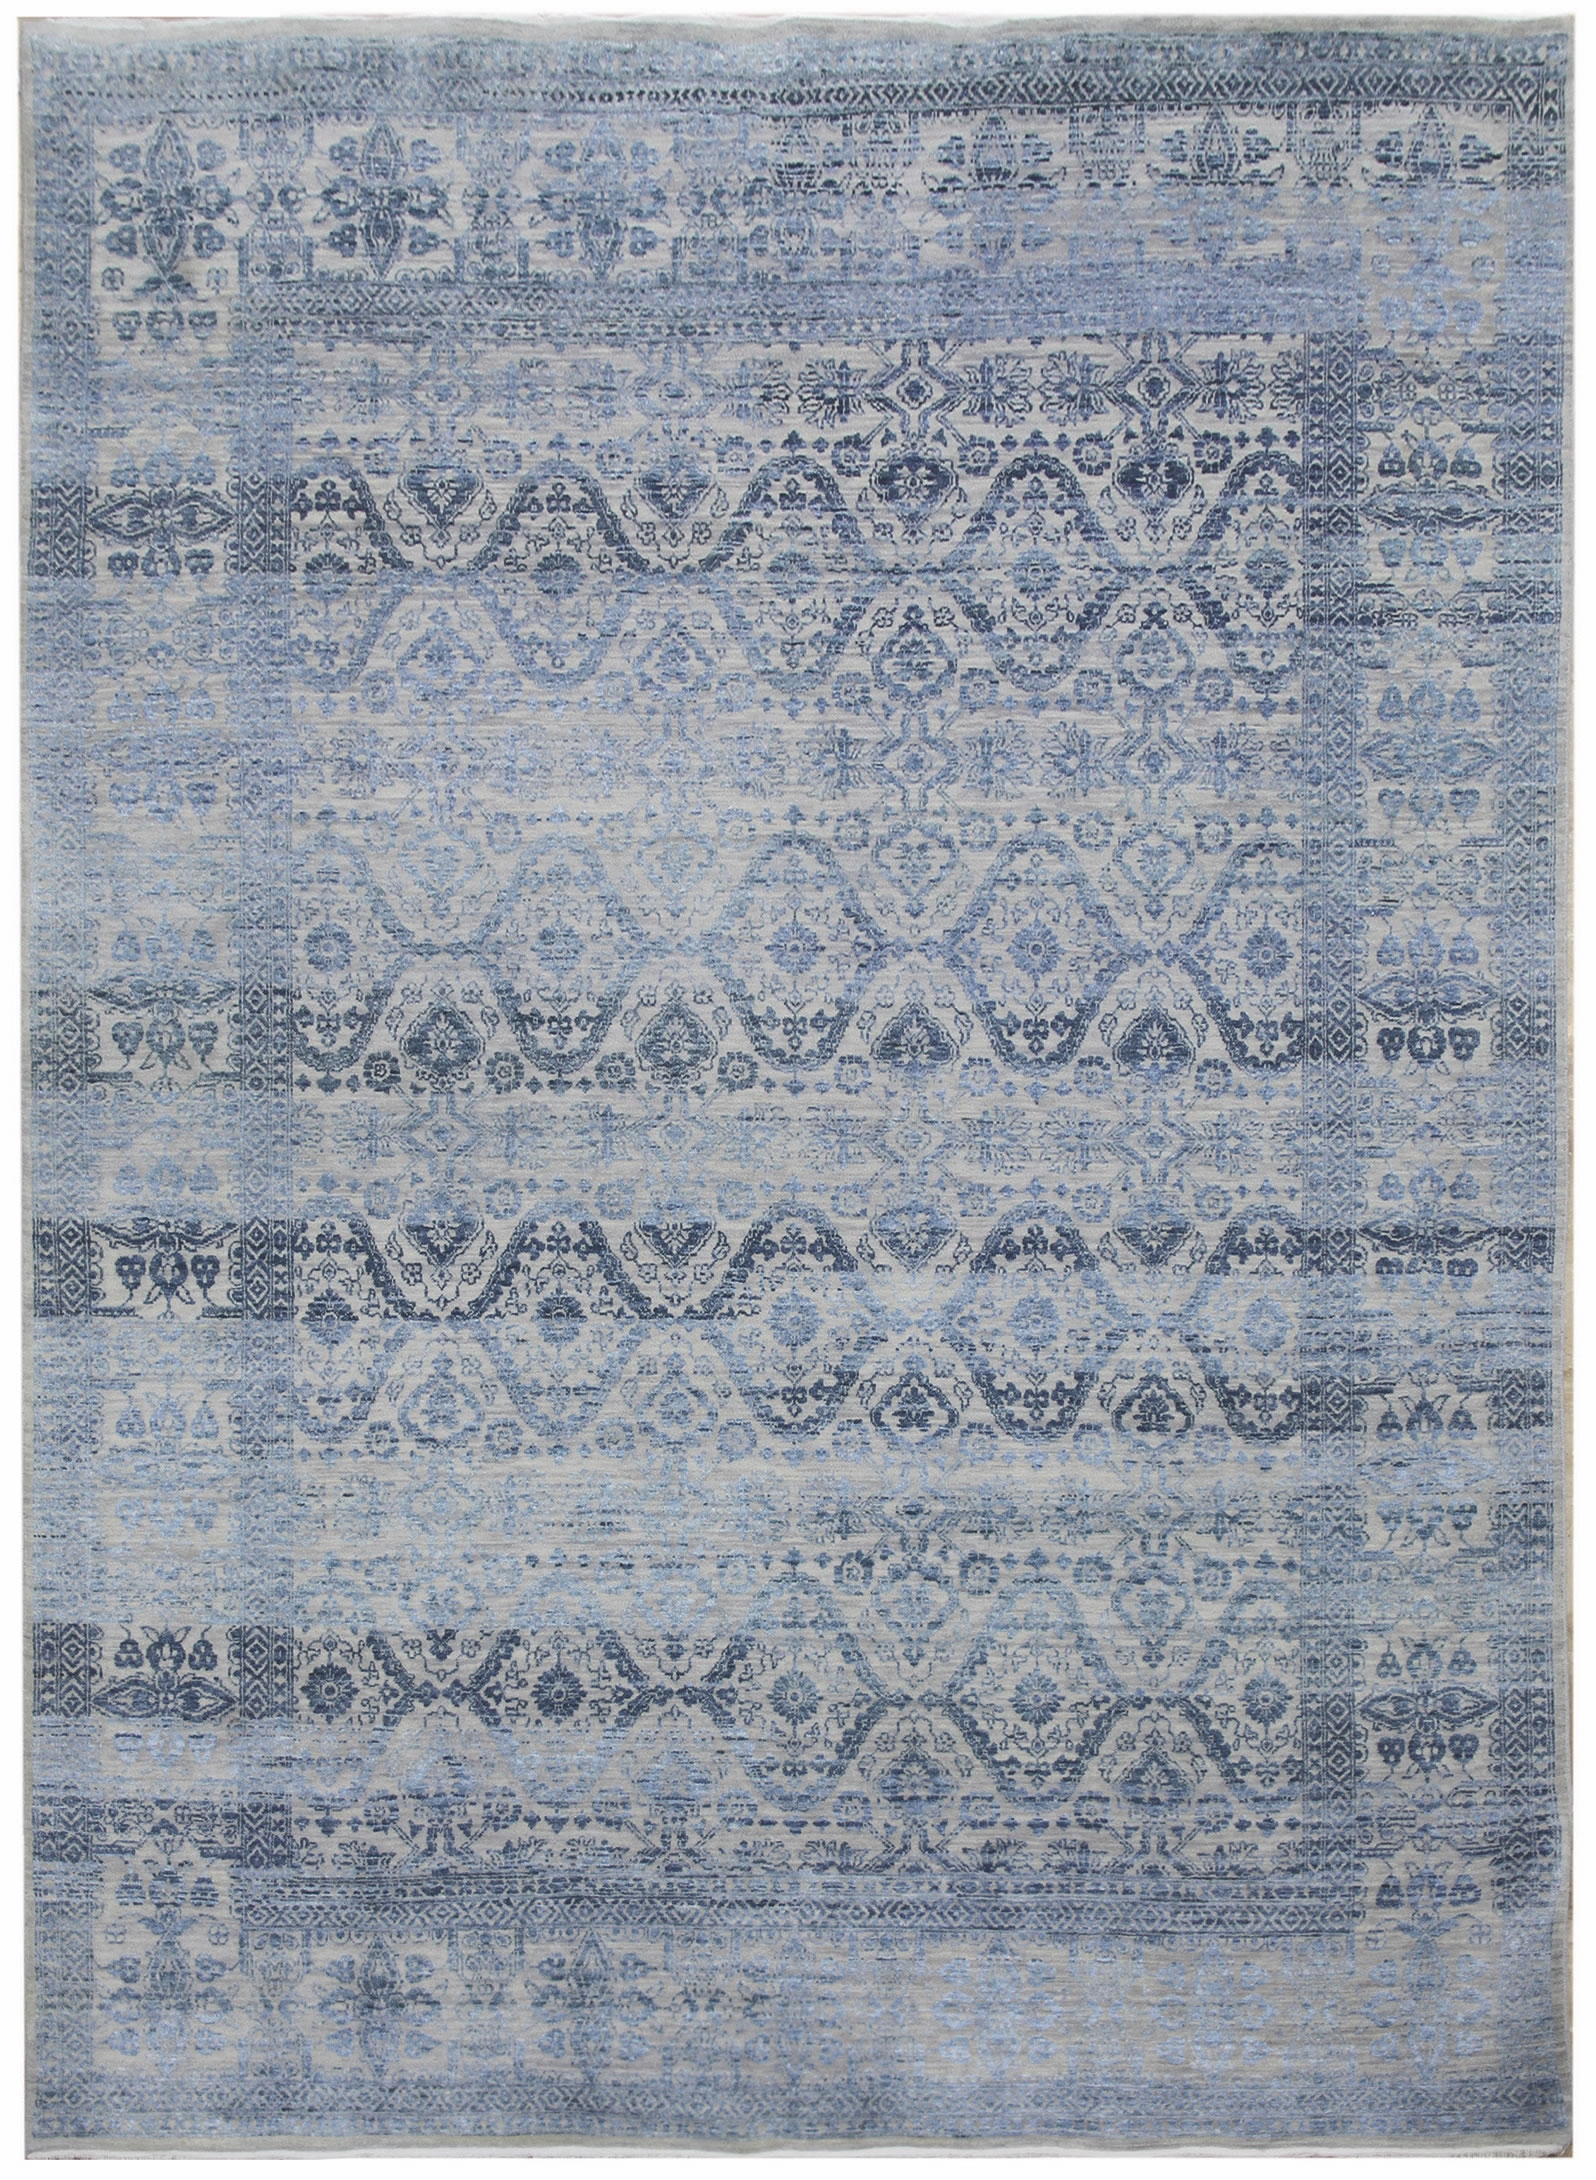 Ručne viazaný kusový koberec Diamond DC-HALI B Silver / blue - 305x425 cm Diamond Carpets koberce 